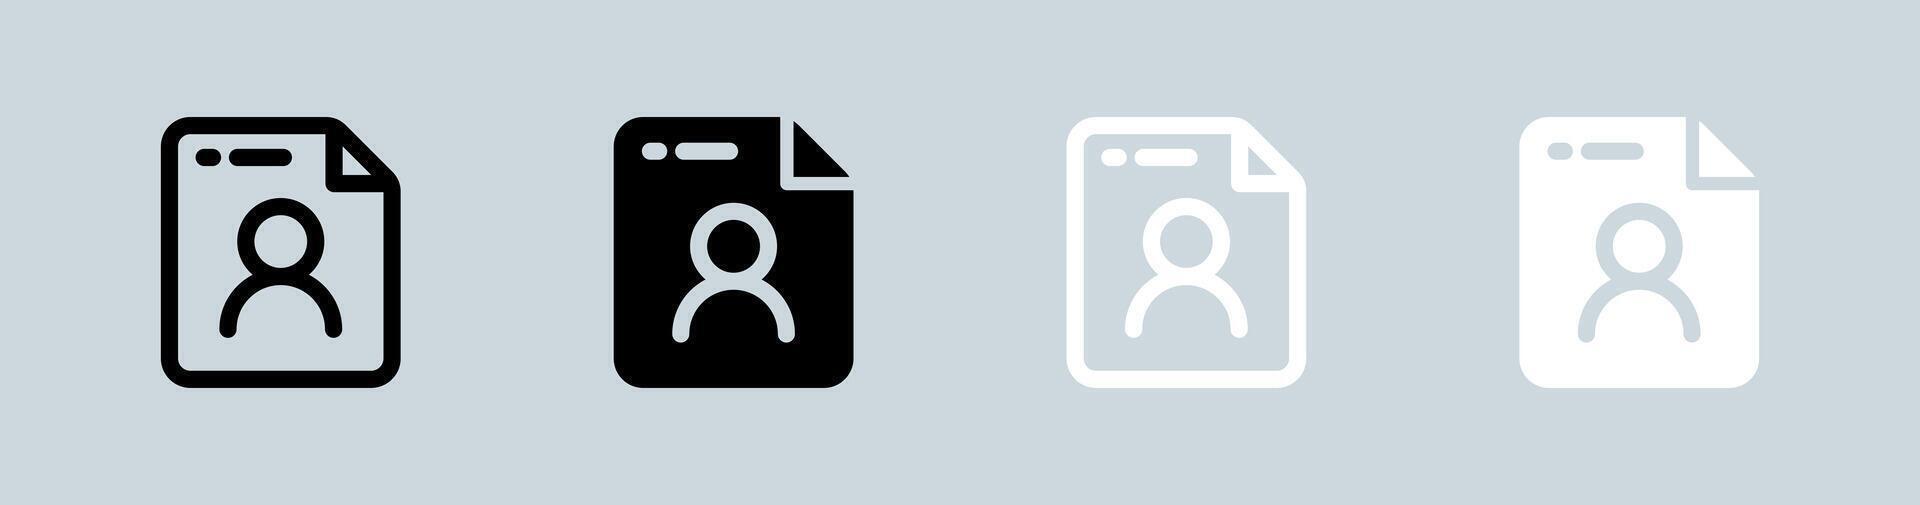 persoonlijk gegevens icoon reeks in zwart en wit. privacy tekens vector illustratie.